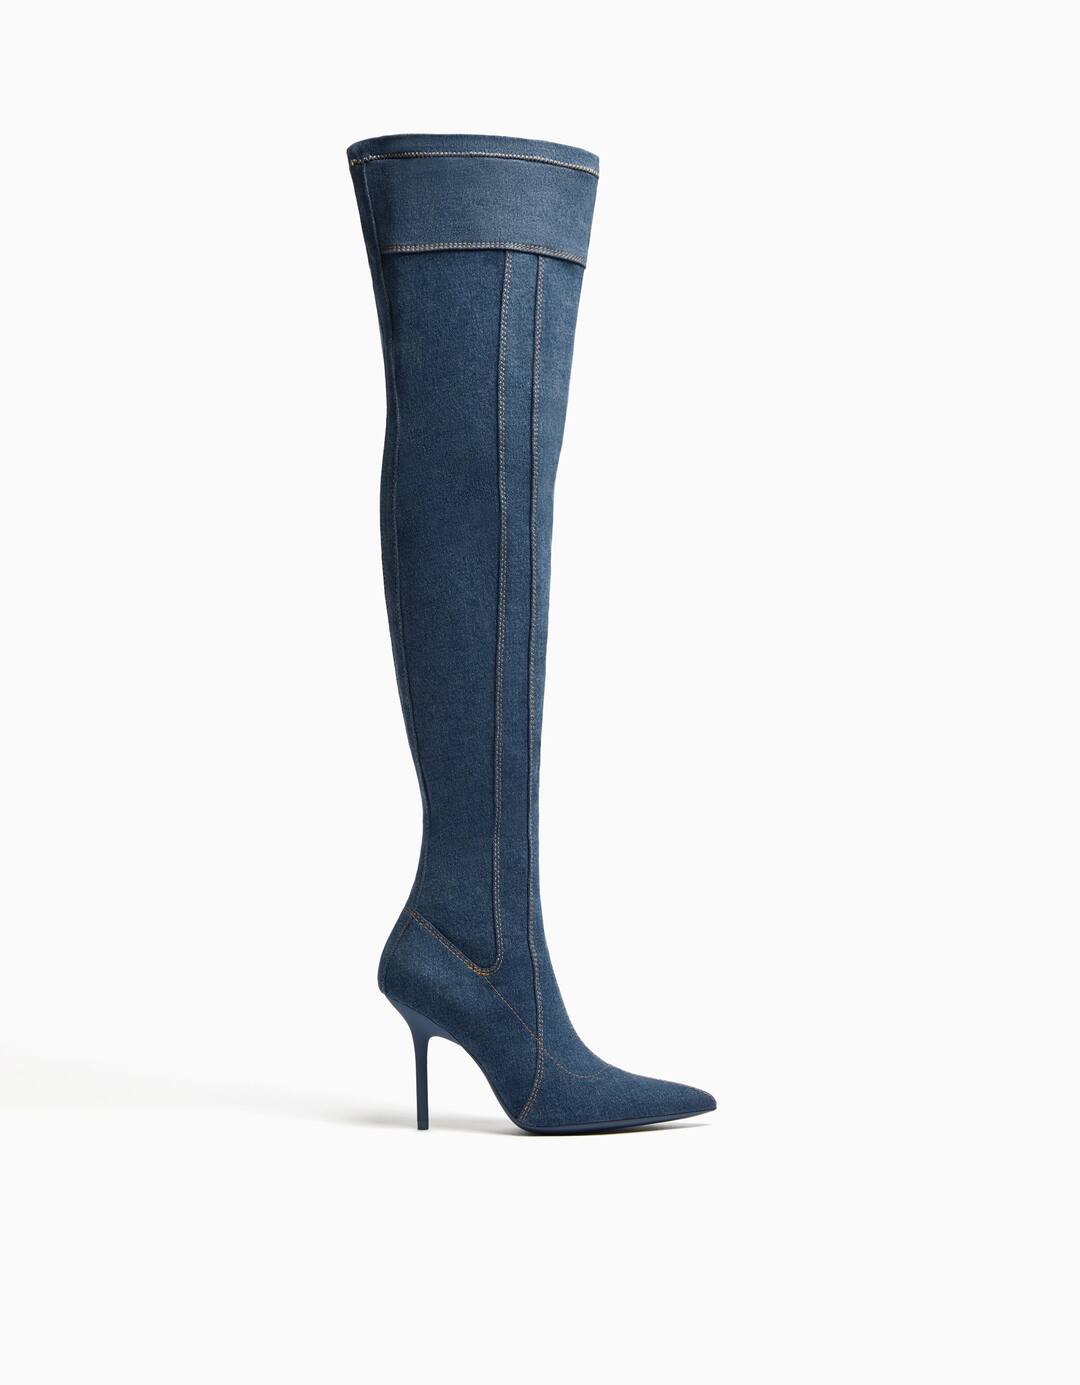 High-heel over-the-knee denim boots